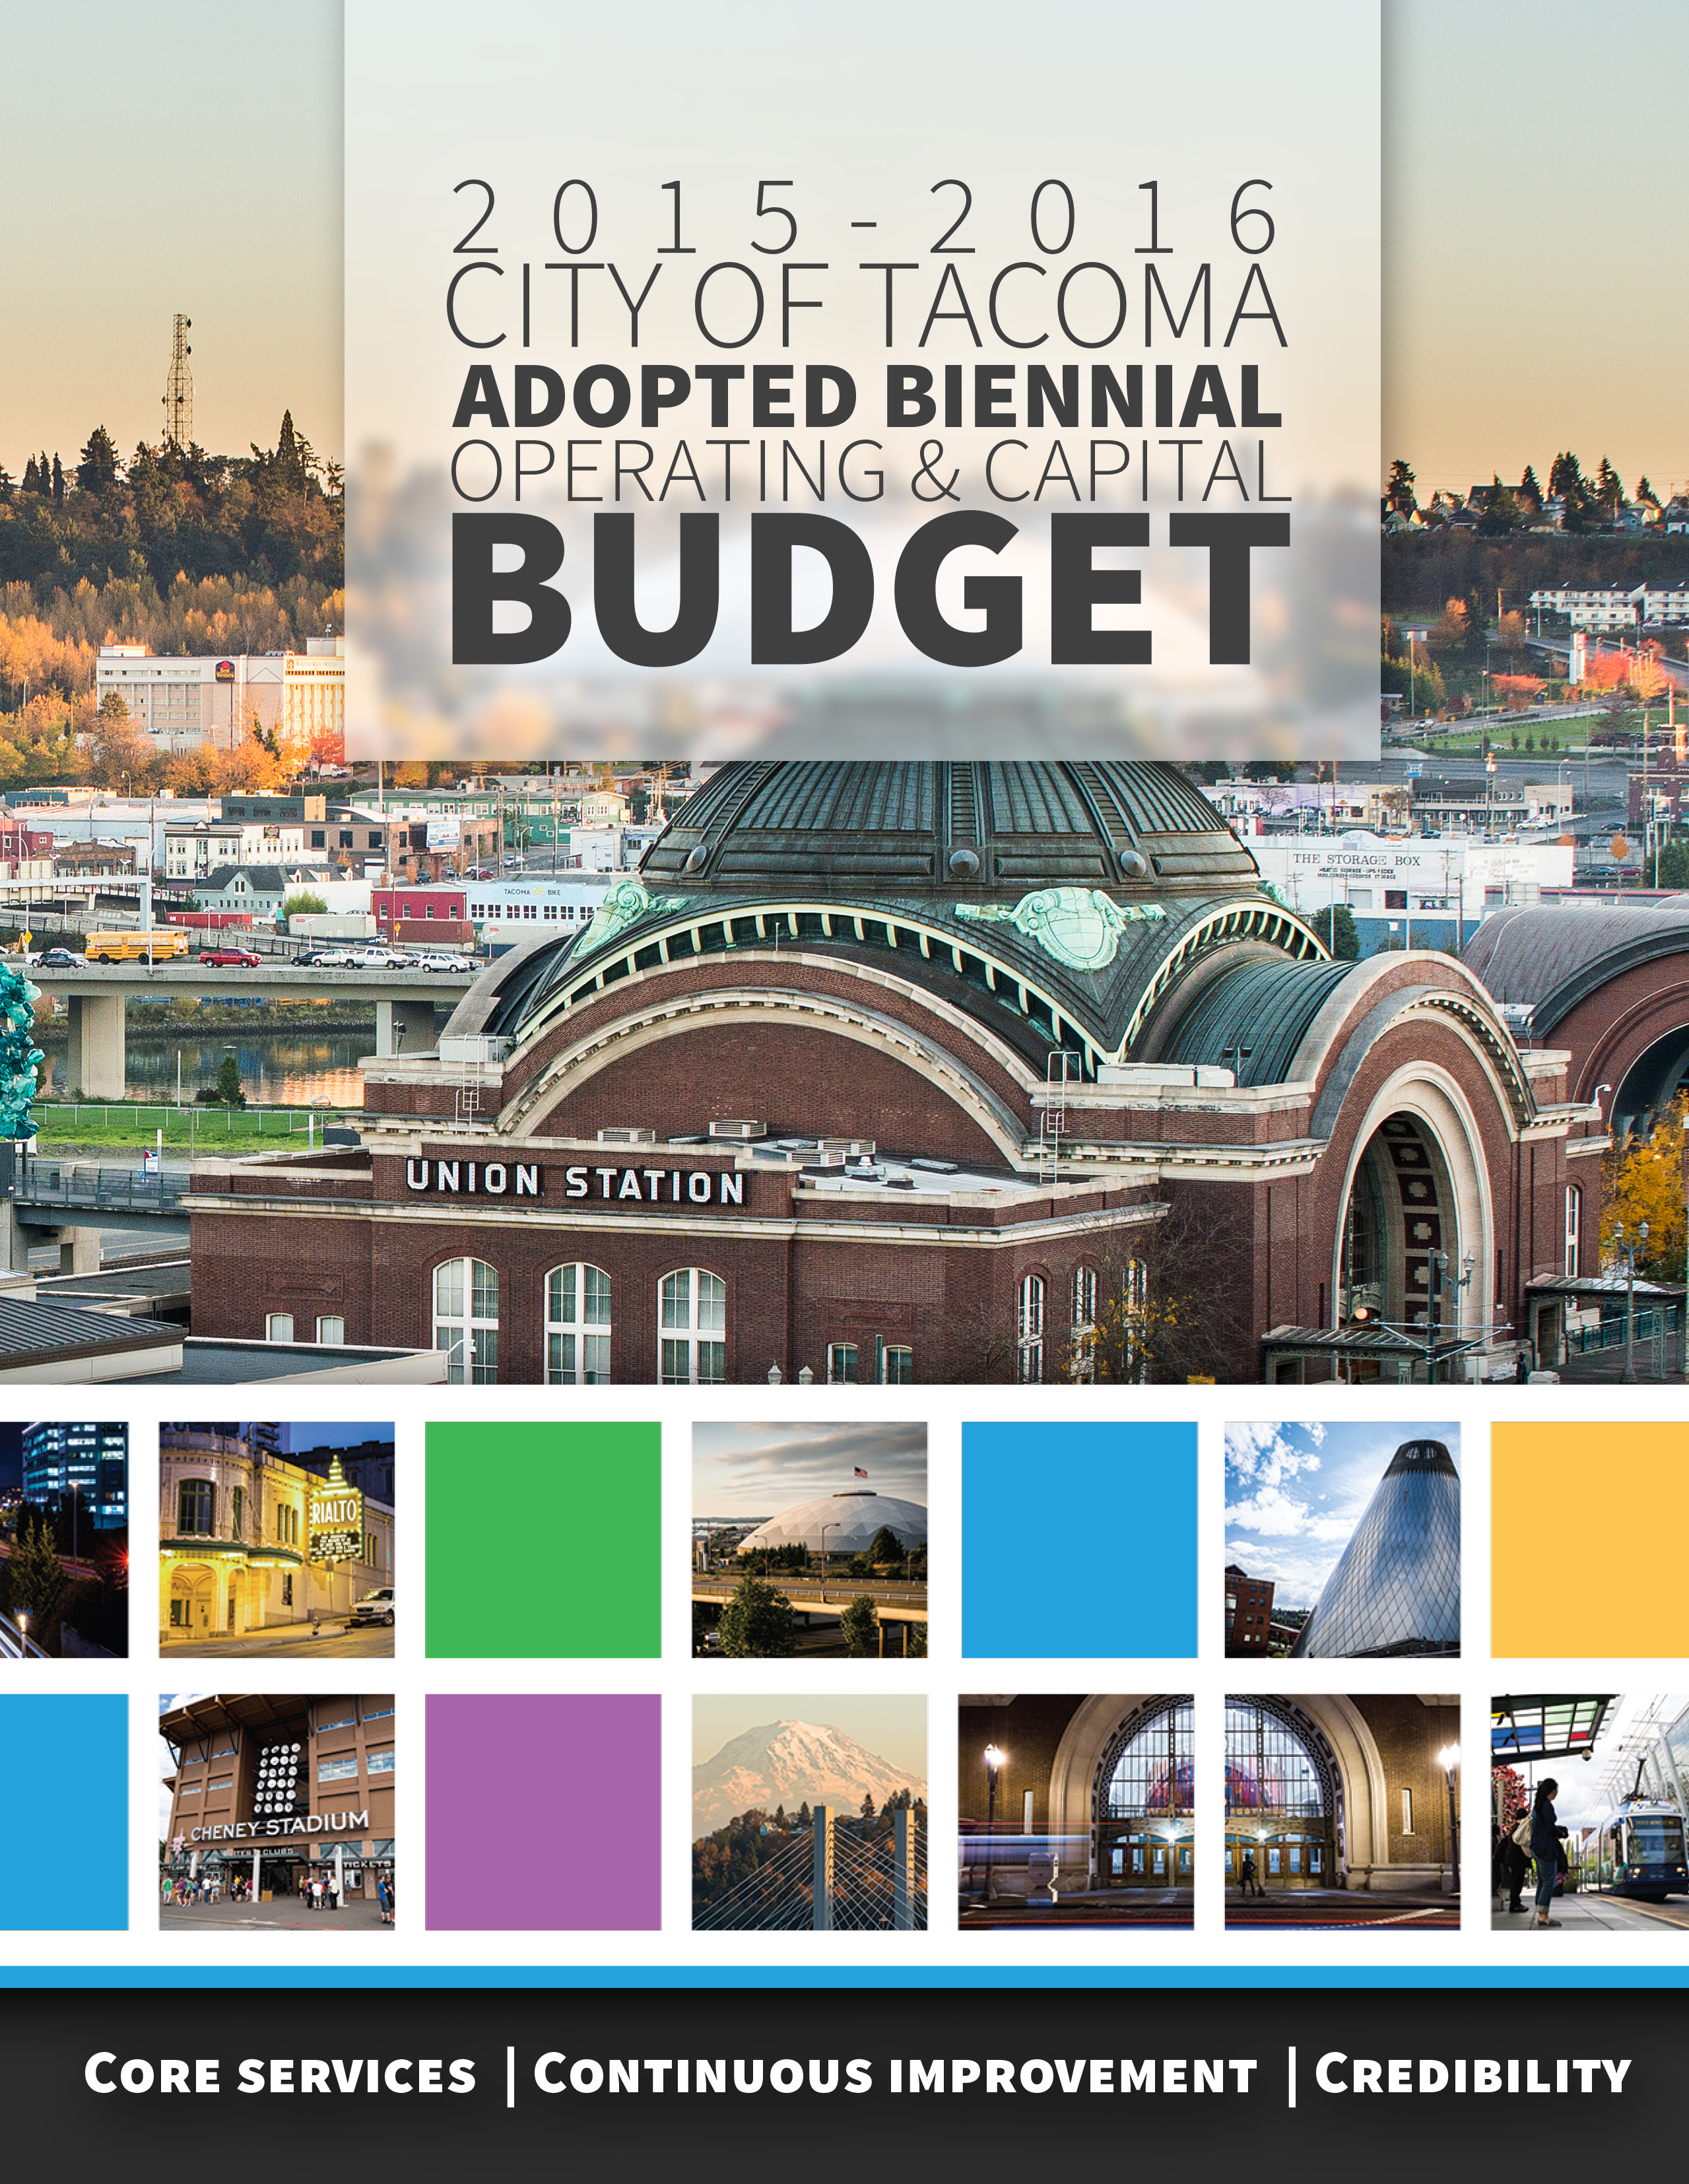 Smeltend Artefact Rijd weg Current Budget 2015-2016 Biennium - City of Tacoma